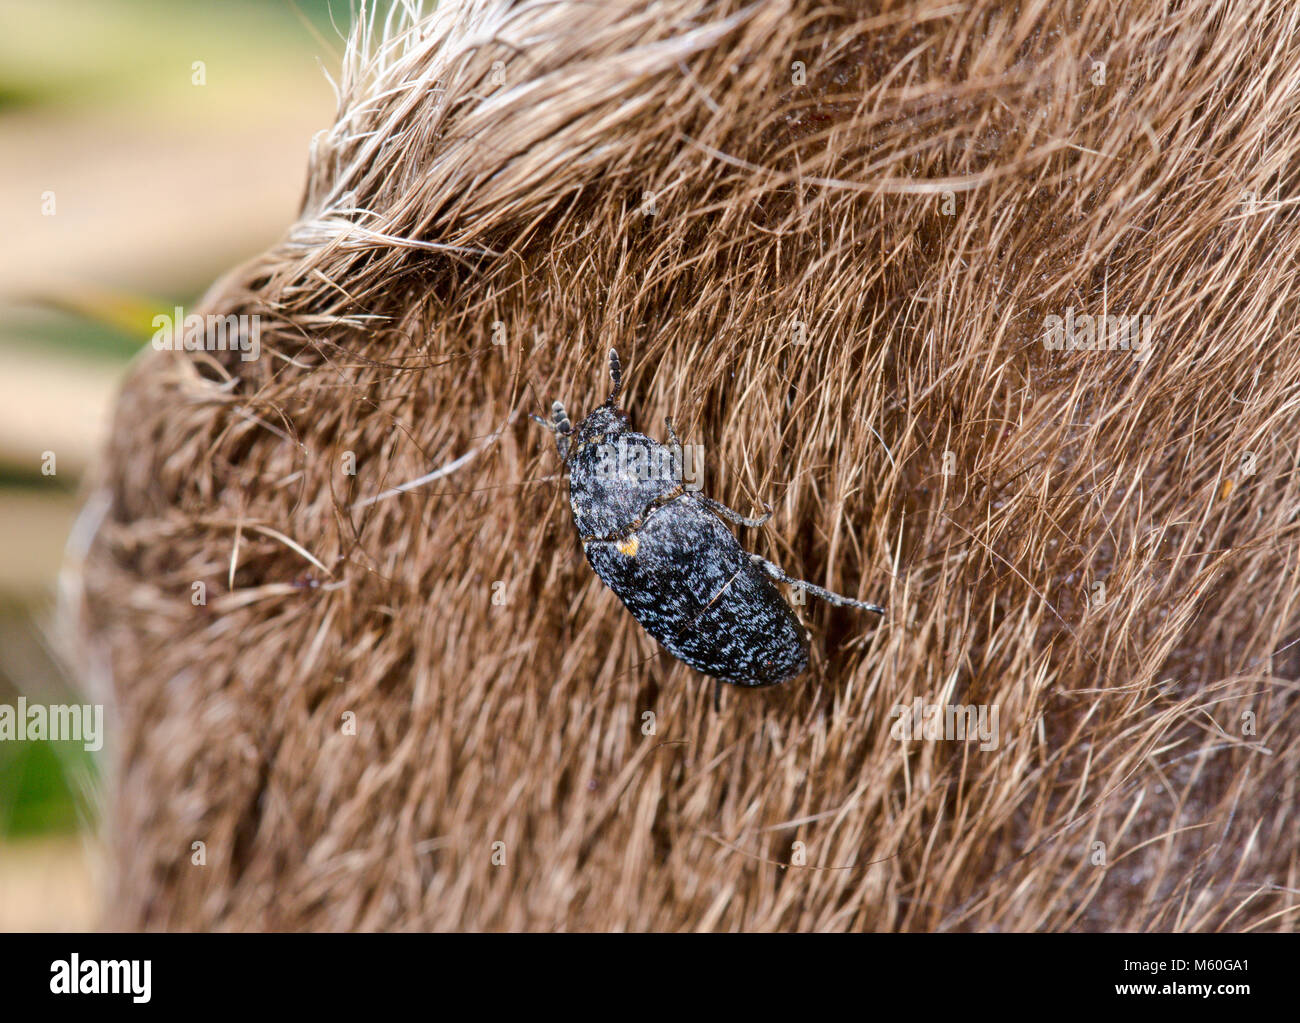 Skin or Hide Beetle (Dermestes murinus) on Deer carcass. Sussex, UK Stock Photo